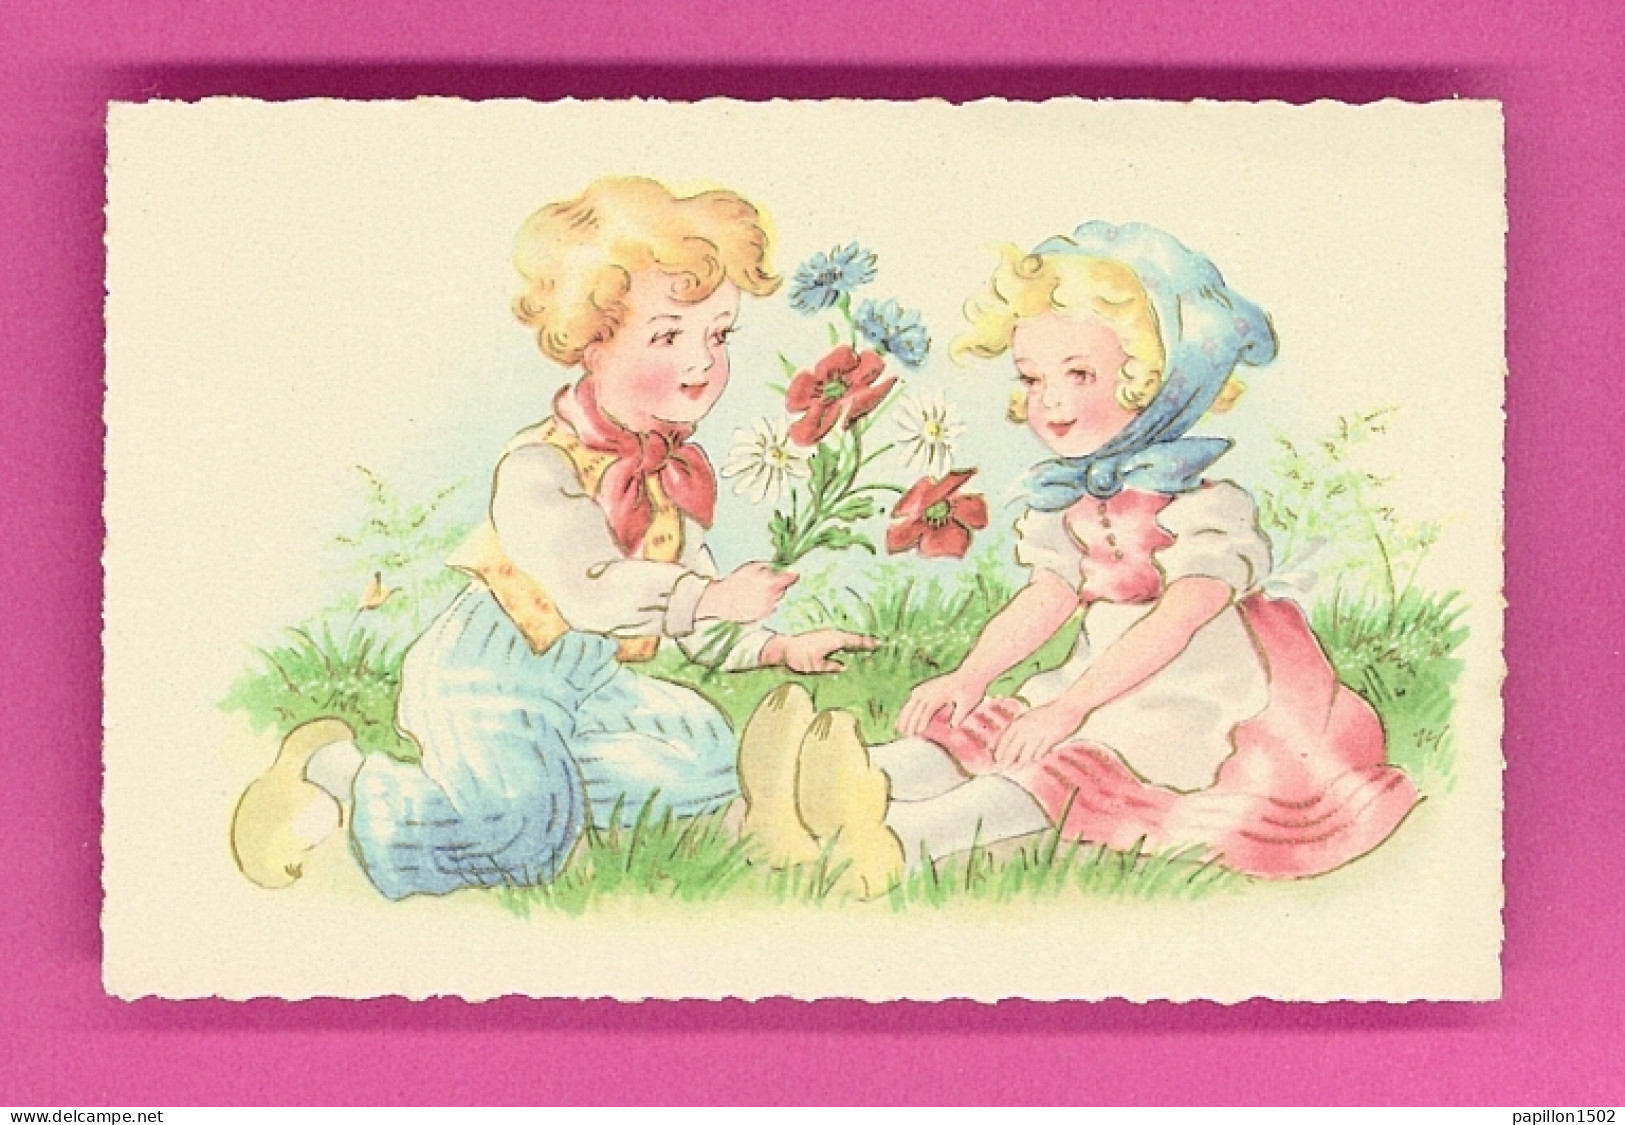 Illust-234PH24  Enfants Avec Sabots, Assis Dans L'herbe, Le Garçonnet Offre Des Fleurs à La Petite Fille, BE - 1900-1949